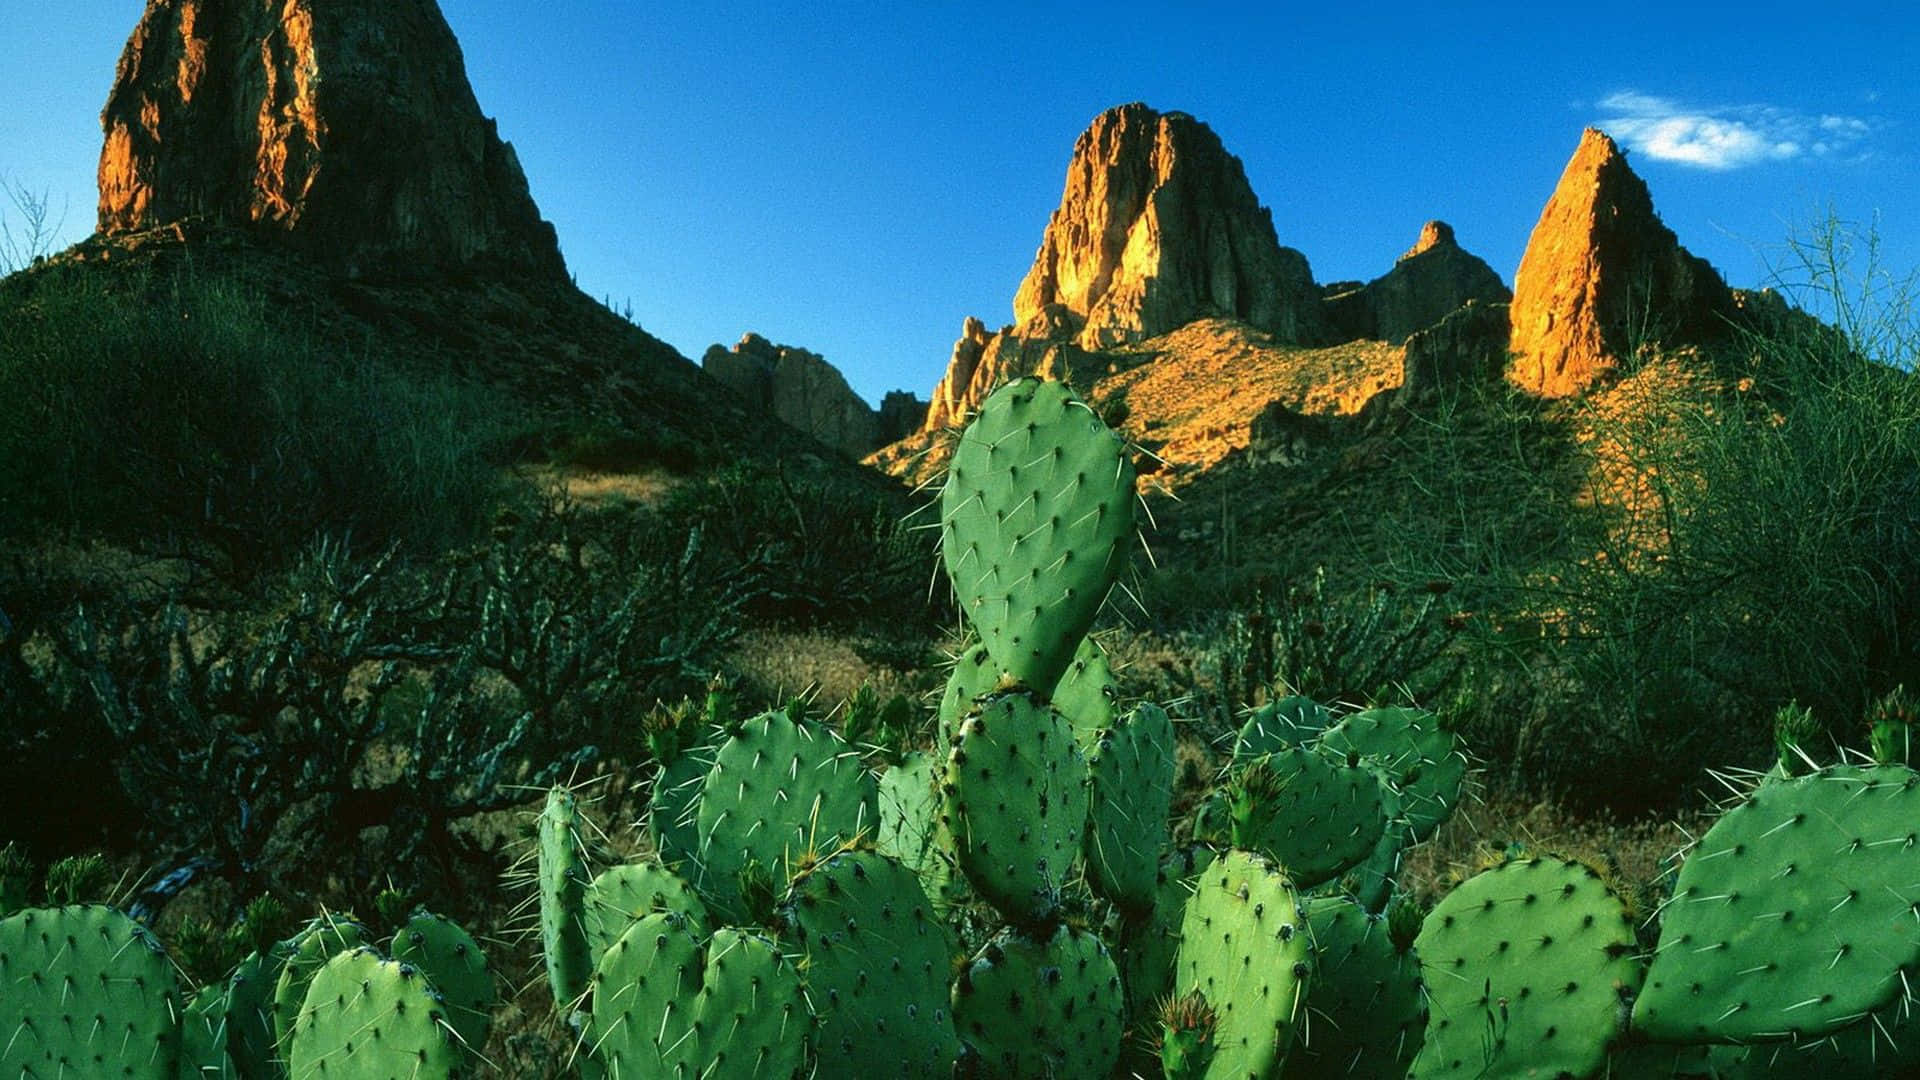 Imagende Nopal Cactus Y Montañas De Pera Espinosa.